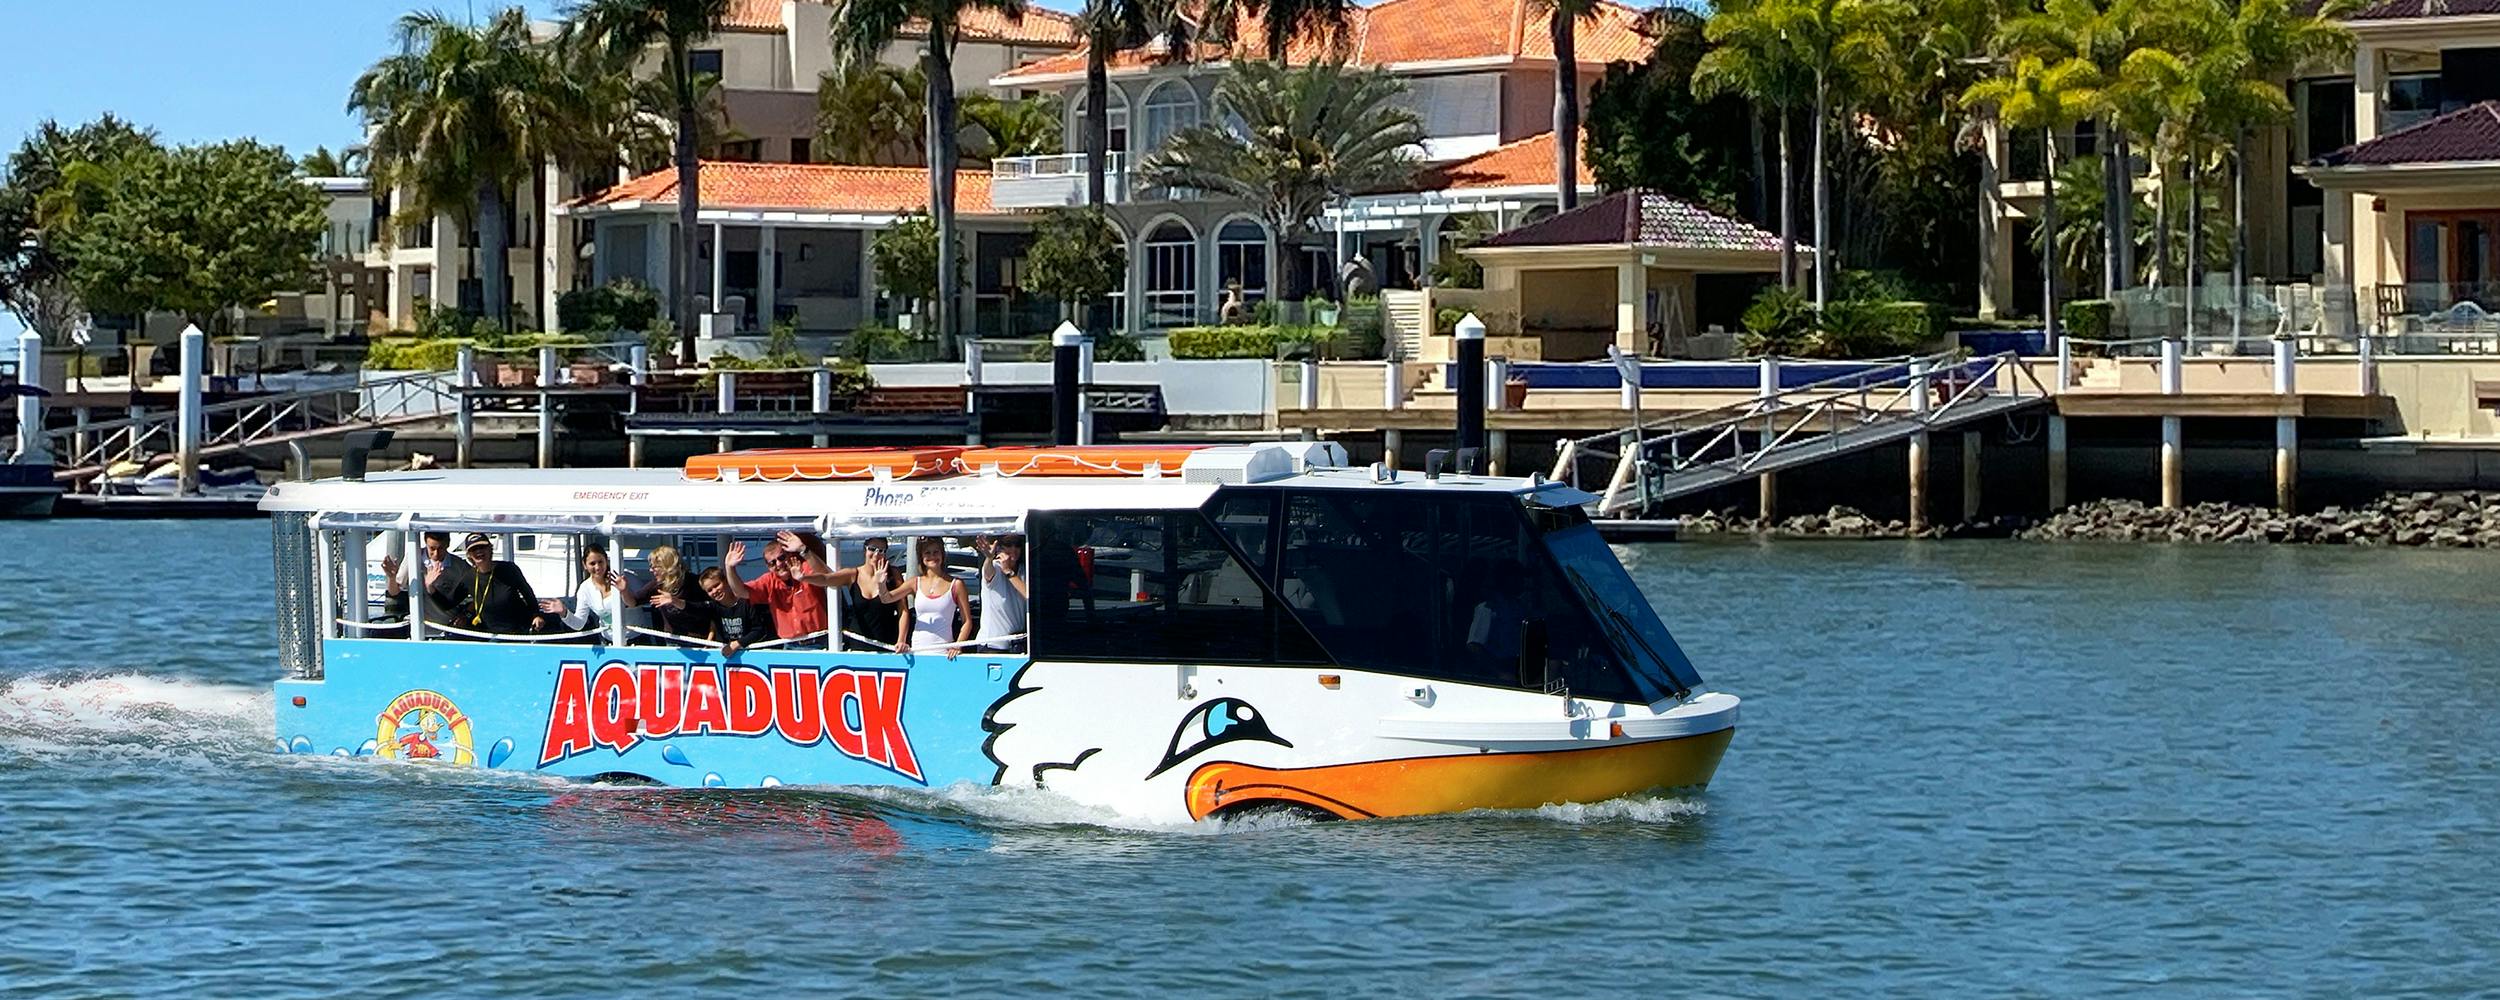 Tour por la ciudad de 1 hora por Aquaduck Sunshine Coast y crucero por el río